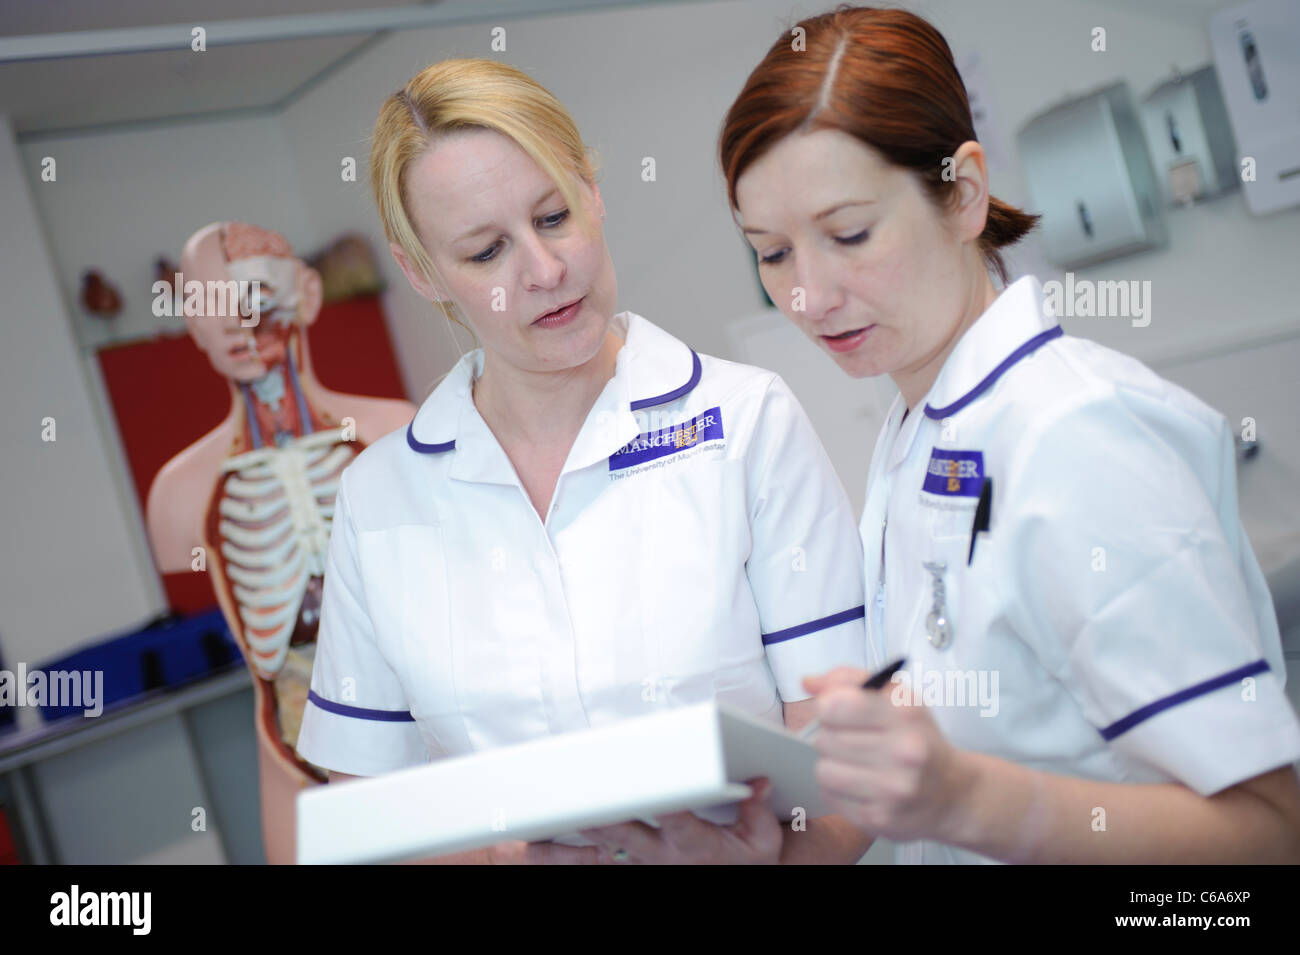 Studenti infermieri infermieristica lettura cartella paziente da anatomia umana modello per le competenze cliniche di laboratorio impostazione ospedaliera Foto Stock